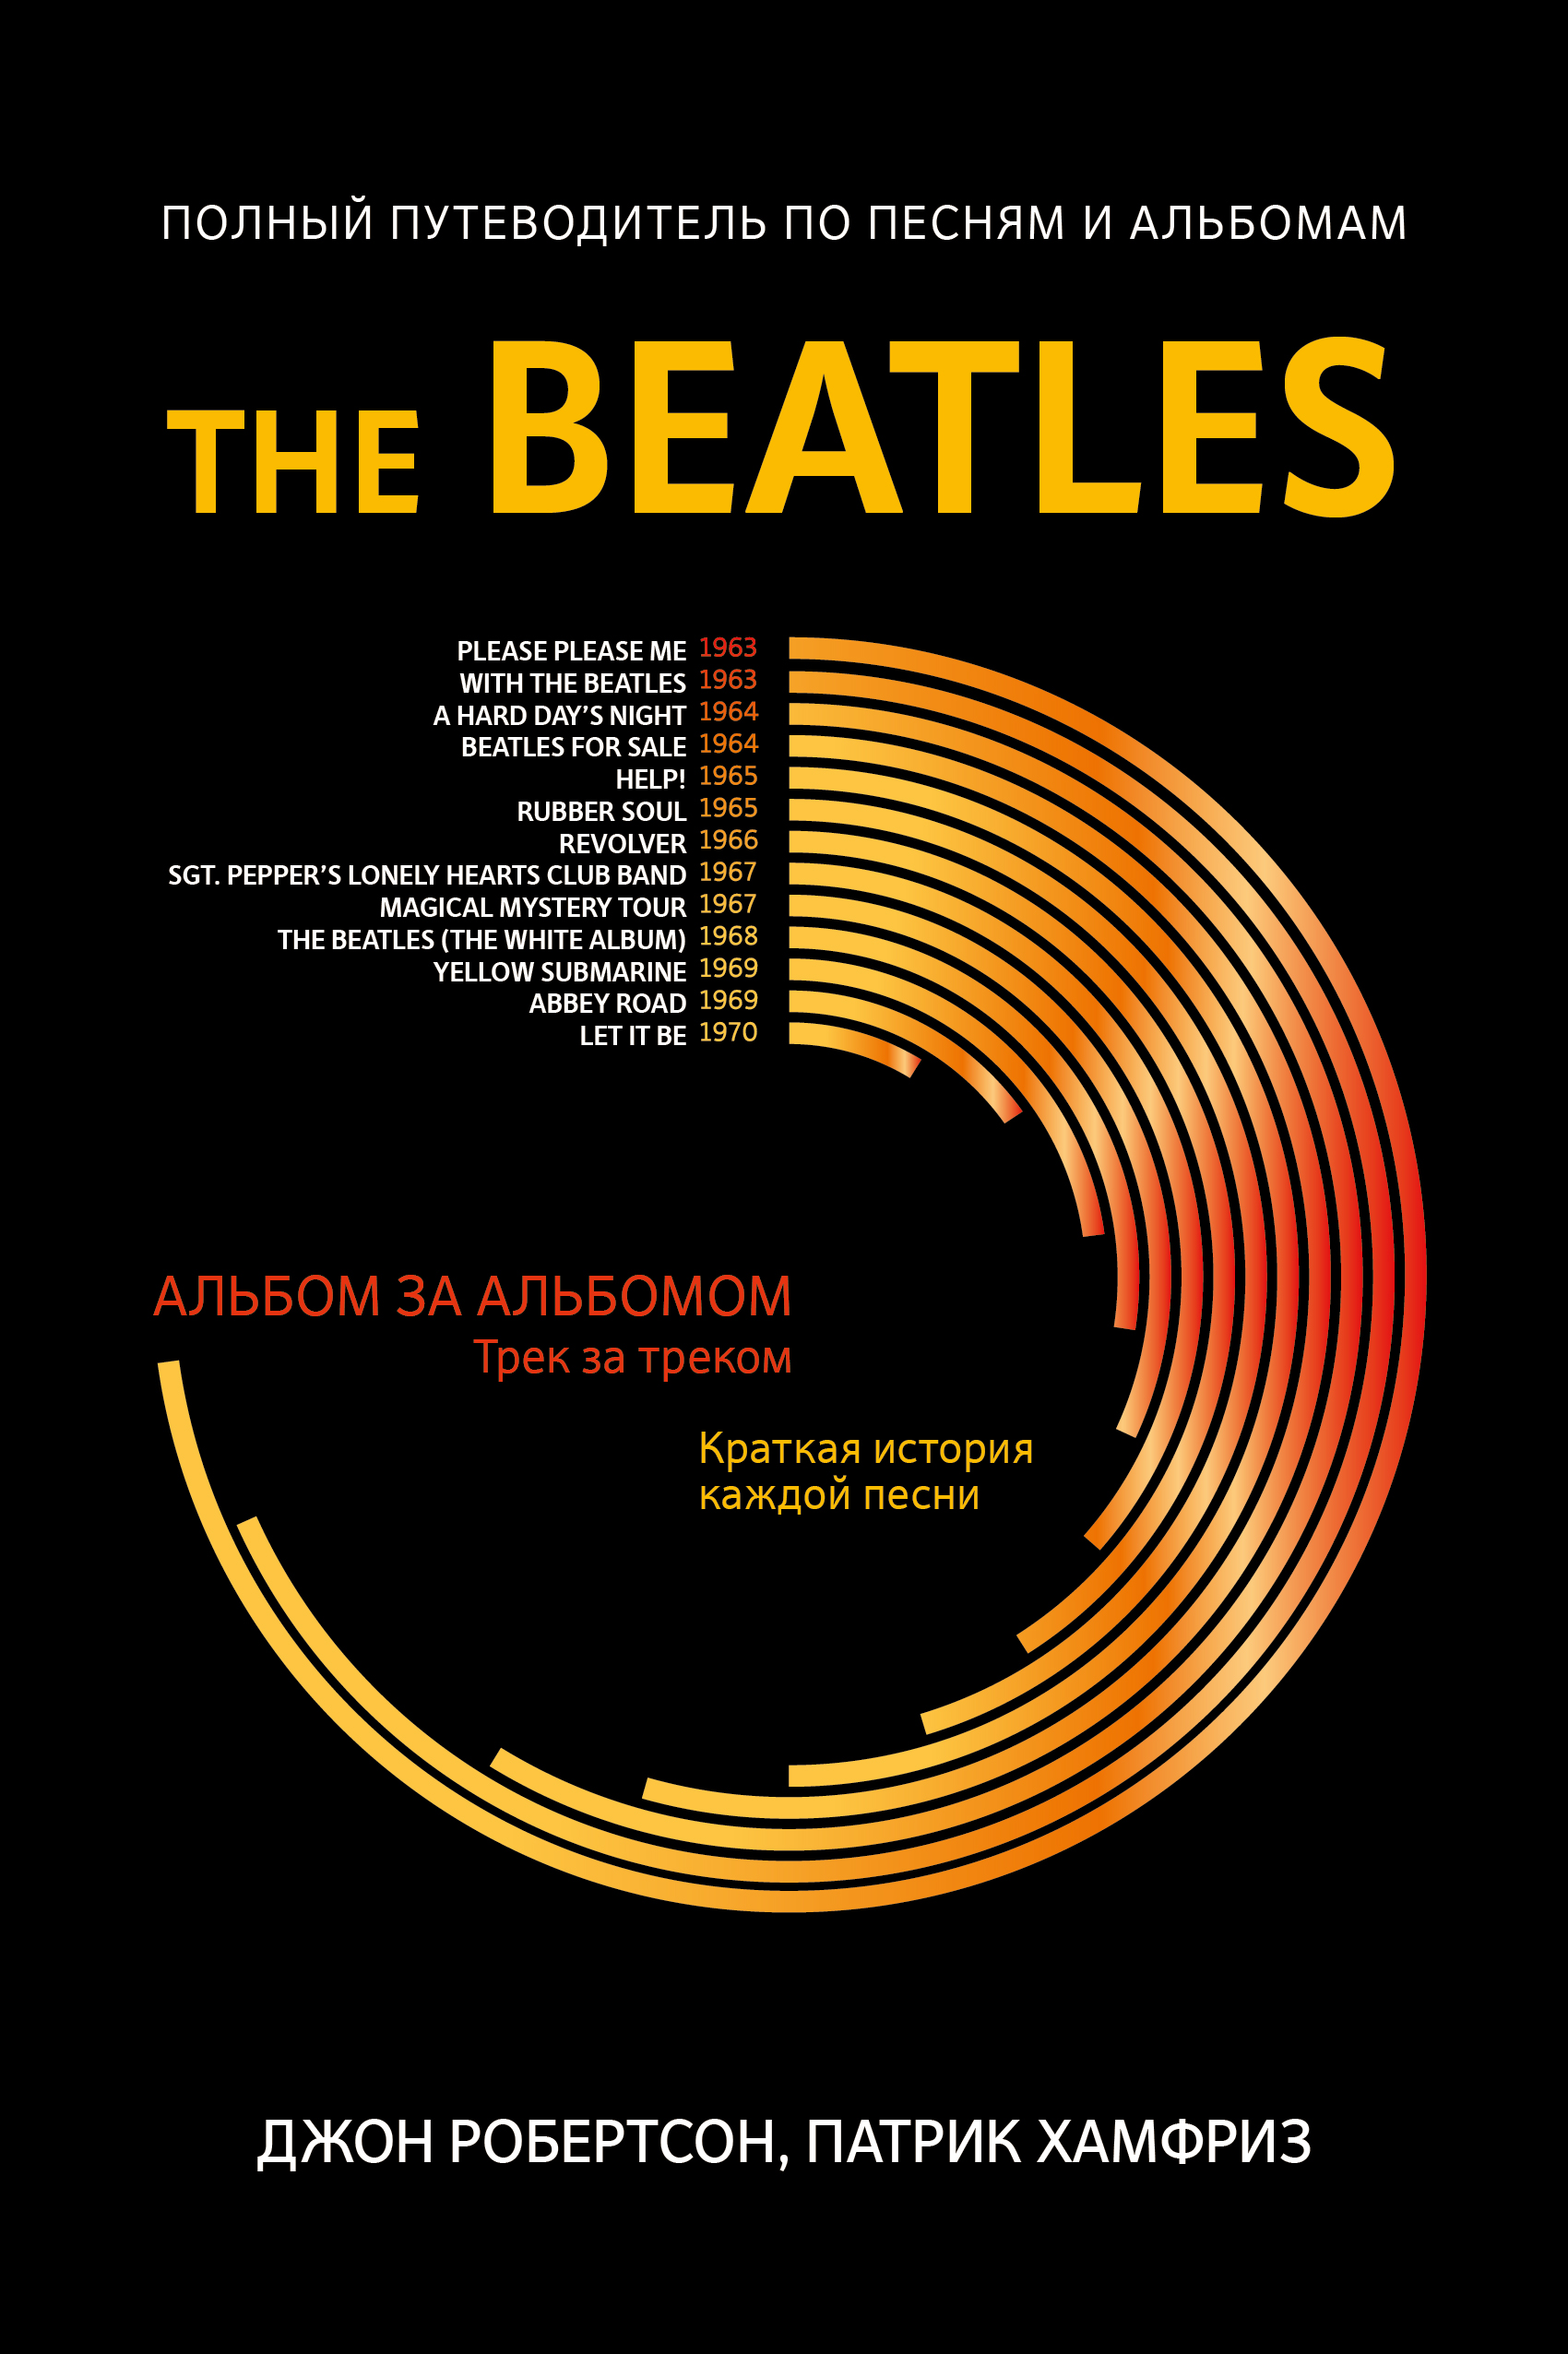 Хамфриз Патрик, Робертсон Джон - The Beatles: полный путеводитель по песням и альбомам